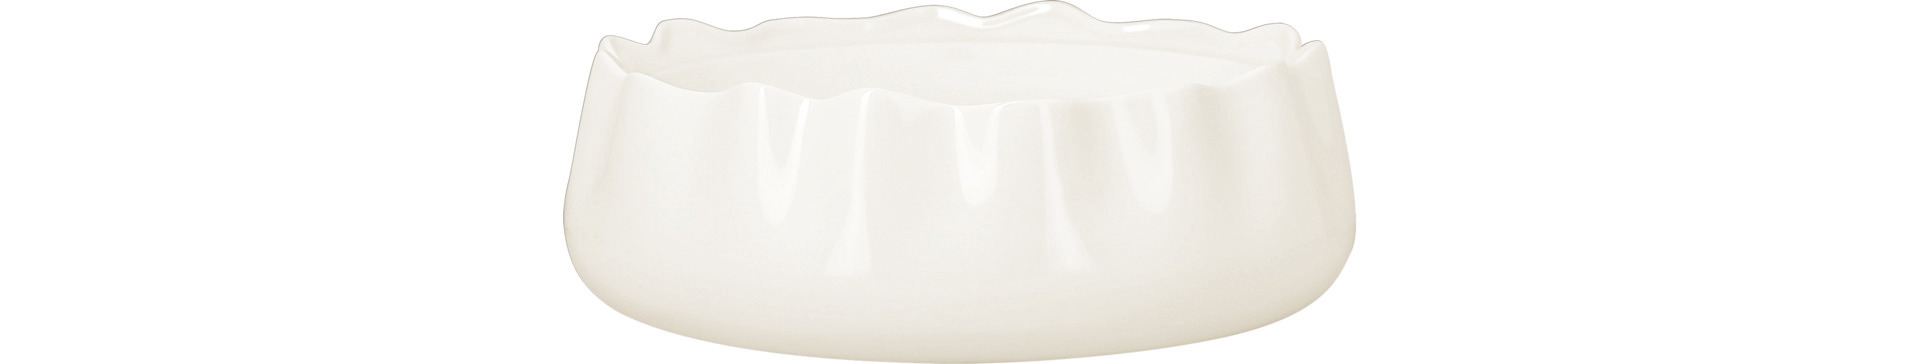 Schale gemeißelt appeal 185 mm / 0,21 l plain-white